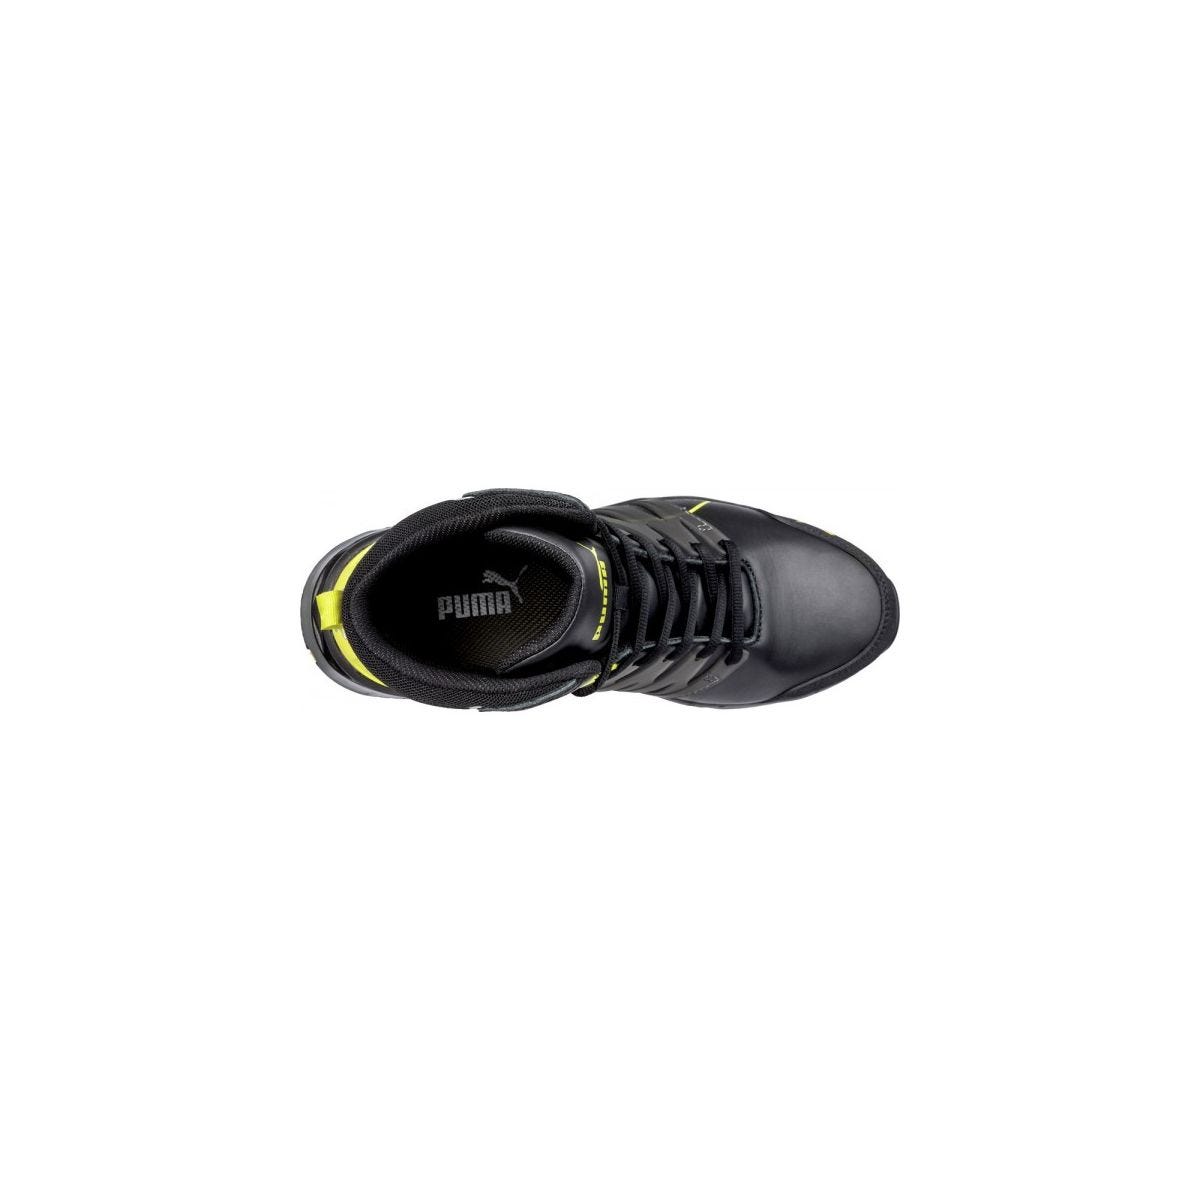 Chaussures de sécurité Velocity 2.0 YELLOW MID S3 - Puma - Taille 48 3